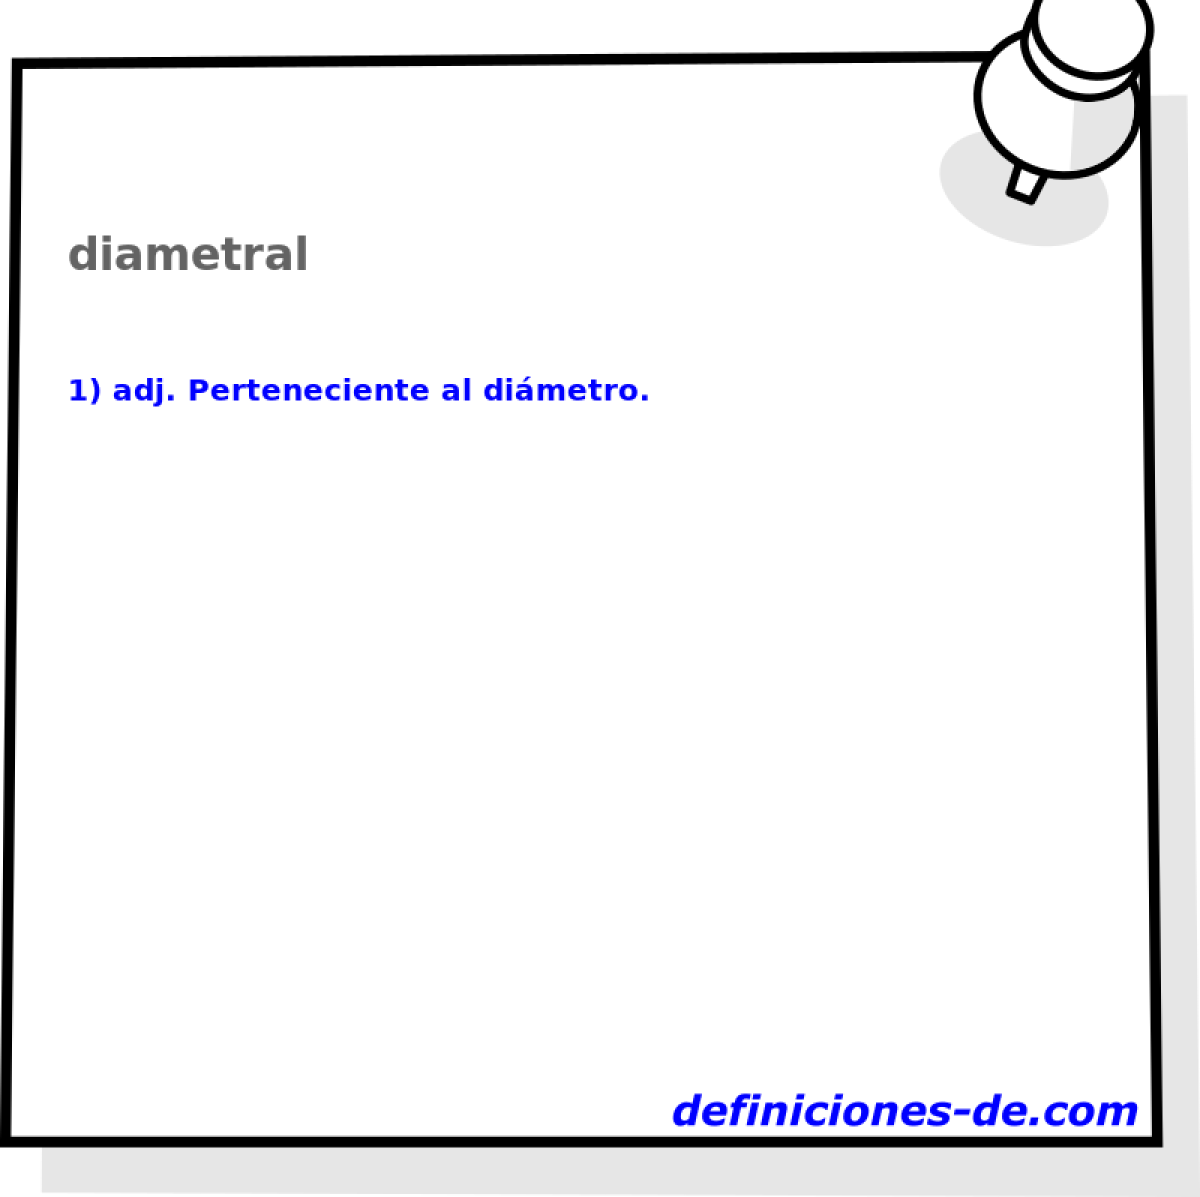 diametral 